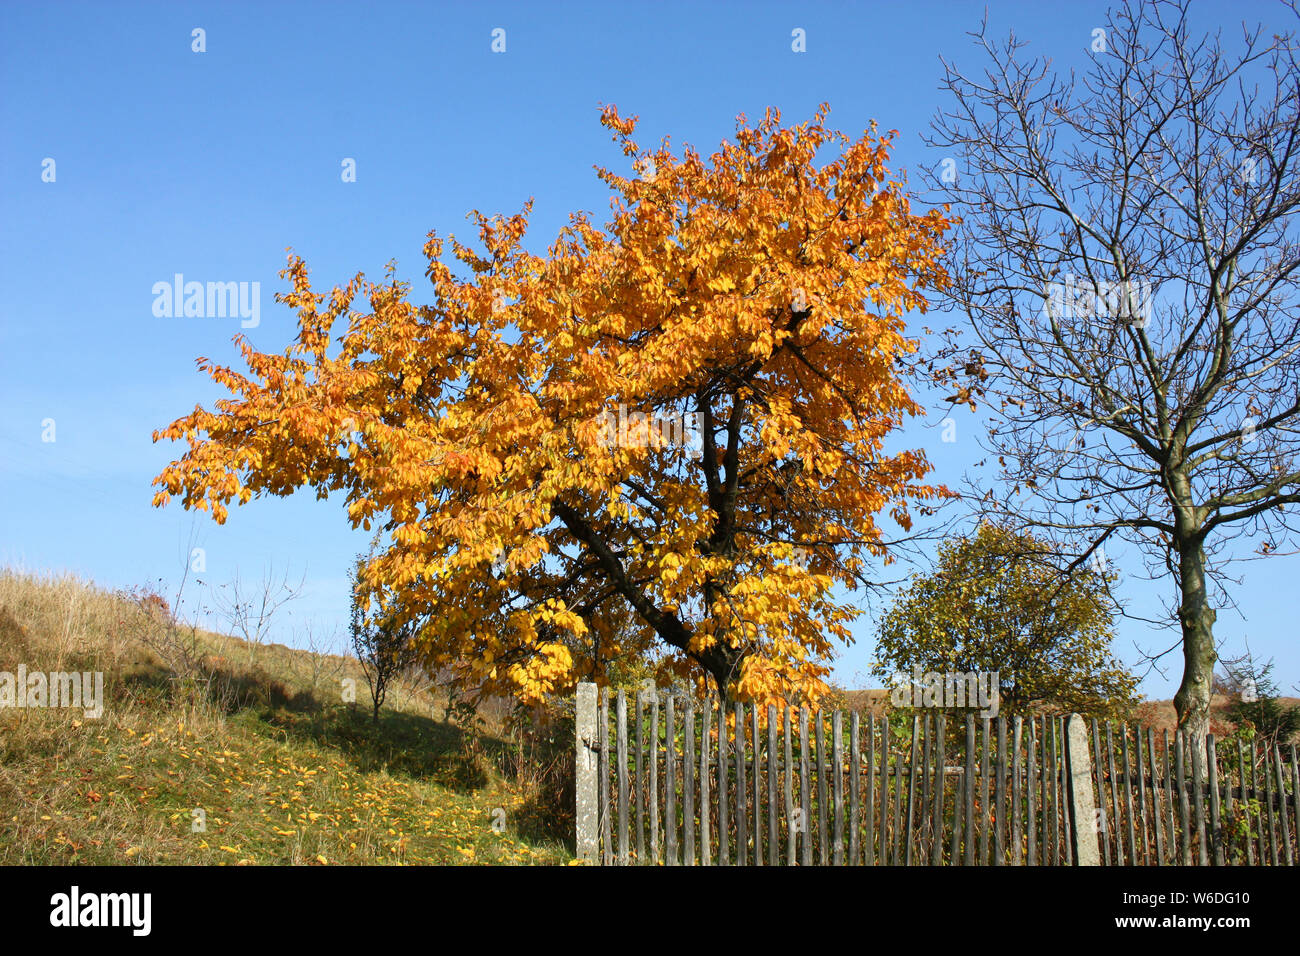 Herbst Landschaft in der polnischen Landschaft - Baum mit Gelben Blättern Stockfoto